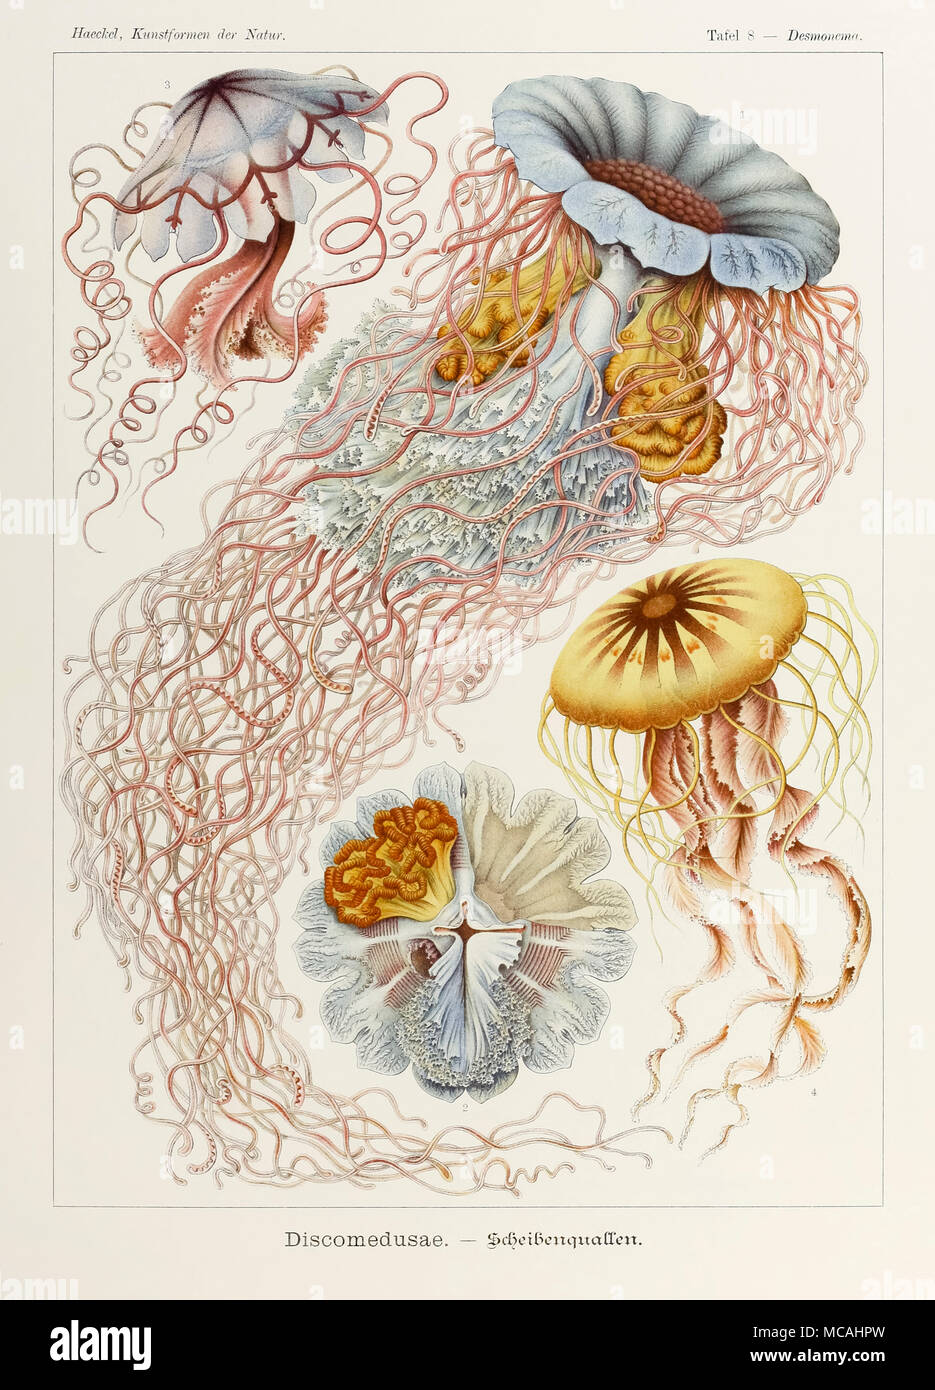 Planche 8 Desmonema Discomedusae de 'Kunstformen der Natur' (formes d'art dans la Nature) illustrée par Ernst Haeckel (1834-1919). Voir plus d'informations ci-dessous. Banque D'Images